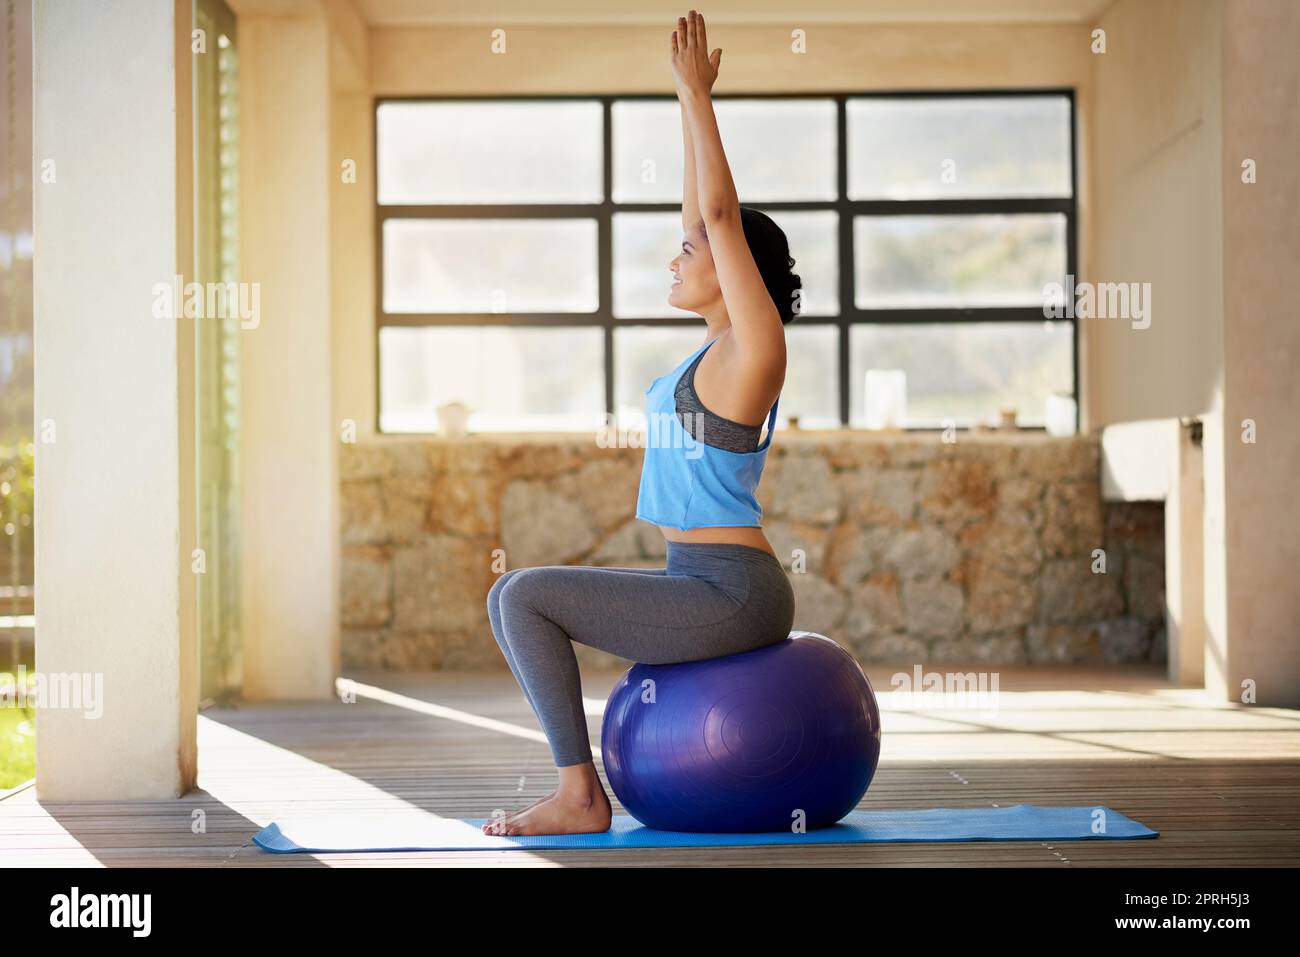 Mit Blick auf ihre Fitness-Ziele. Eine junge Frau, die zu Hause mit einem Gymnastikball trainiert. Stockfoto